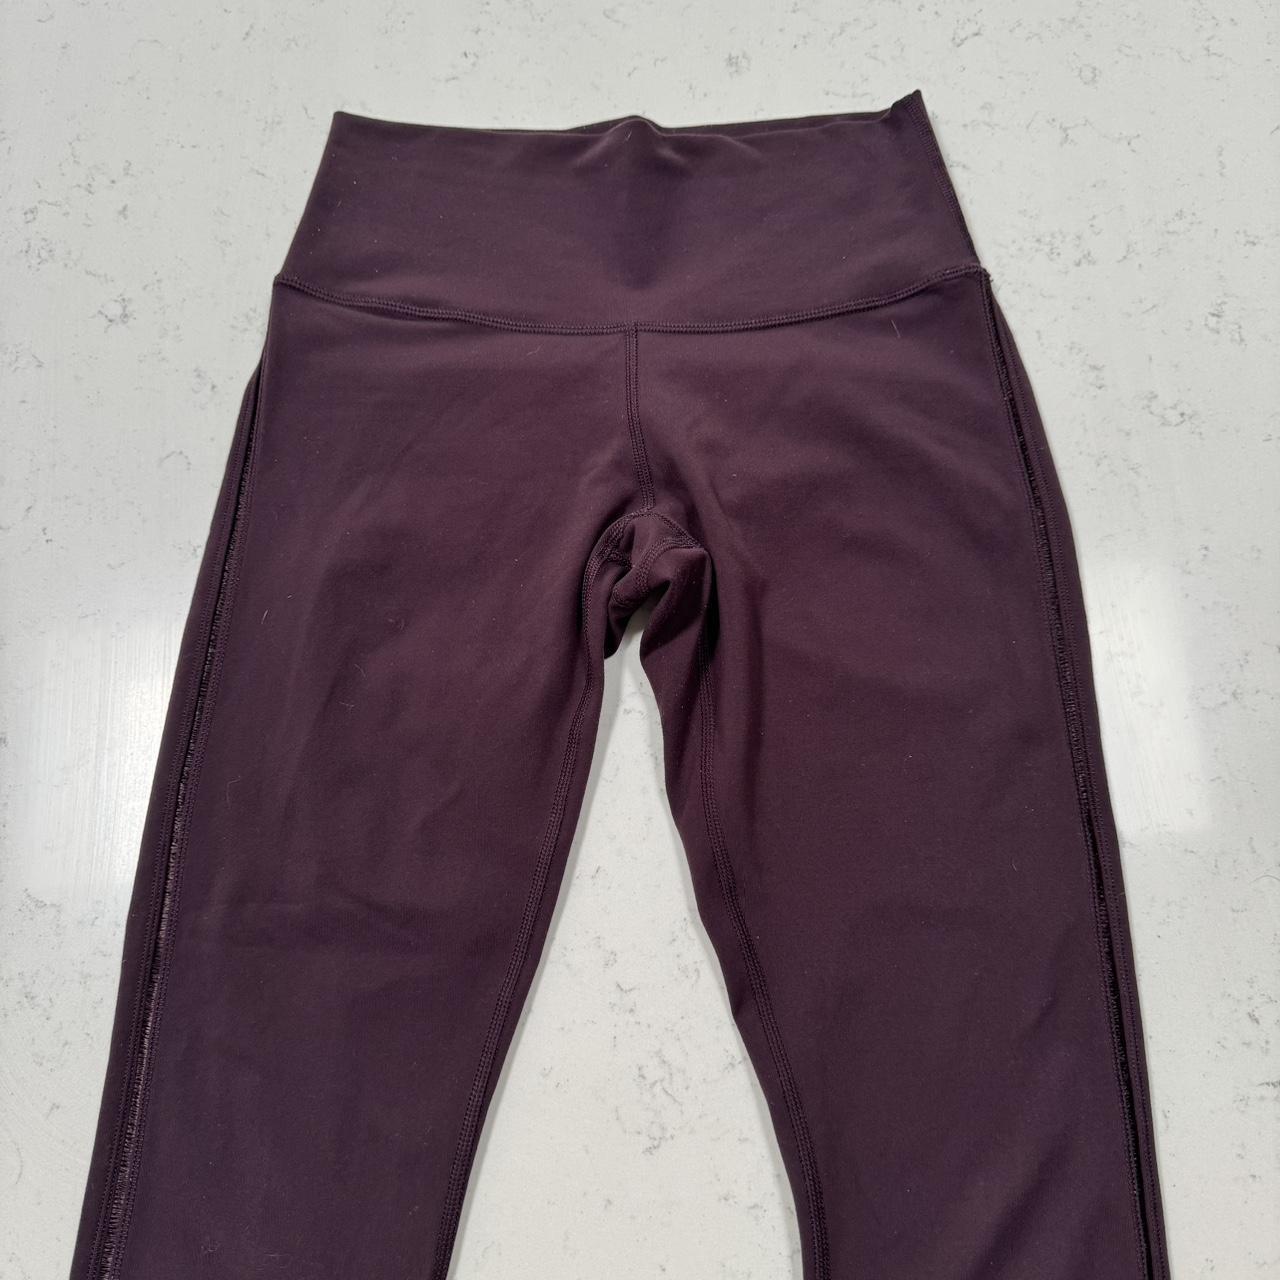 Lululemon capri tie dye leggings, hardly used & in - Depop